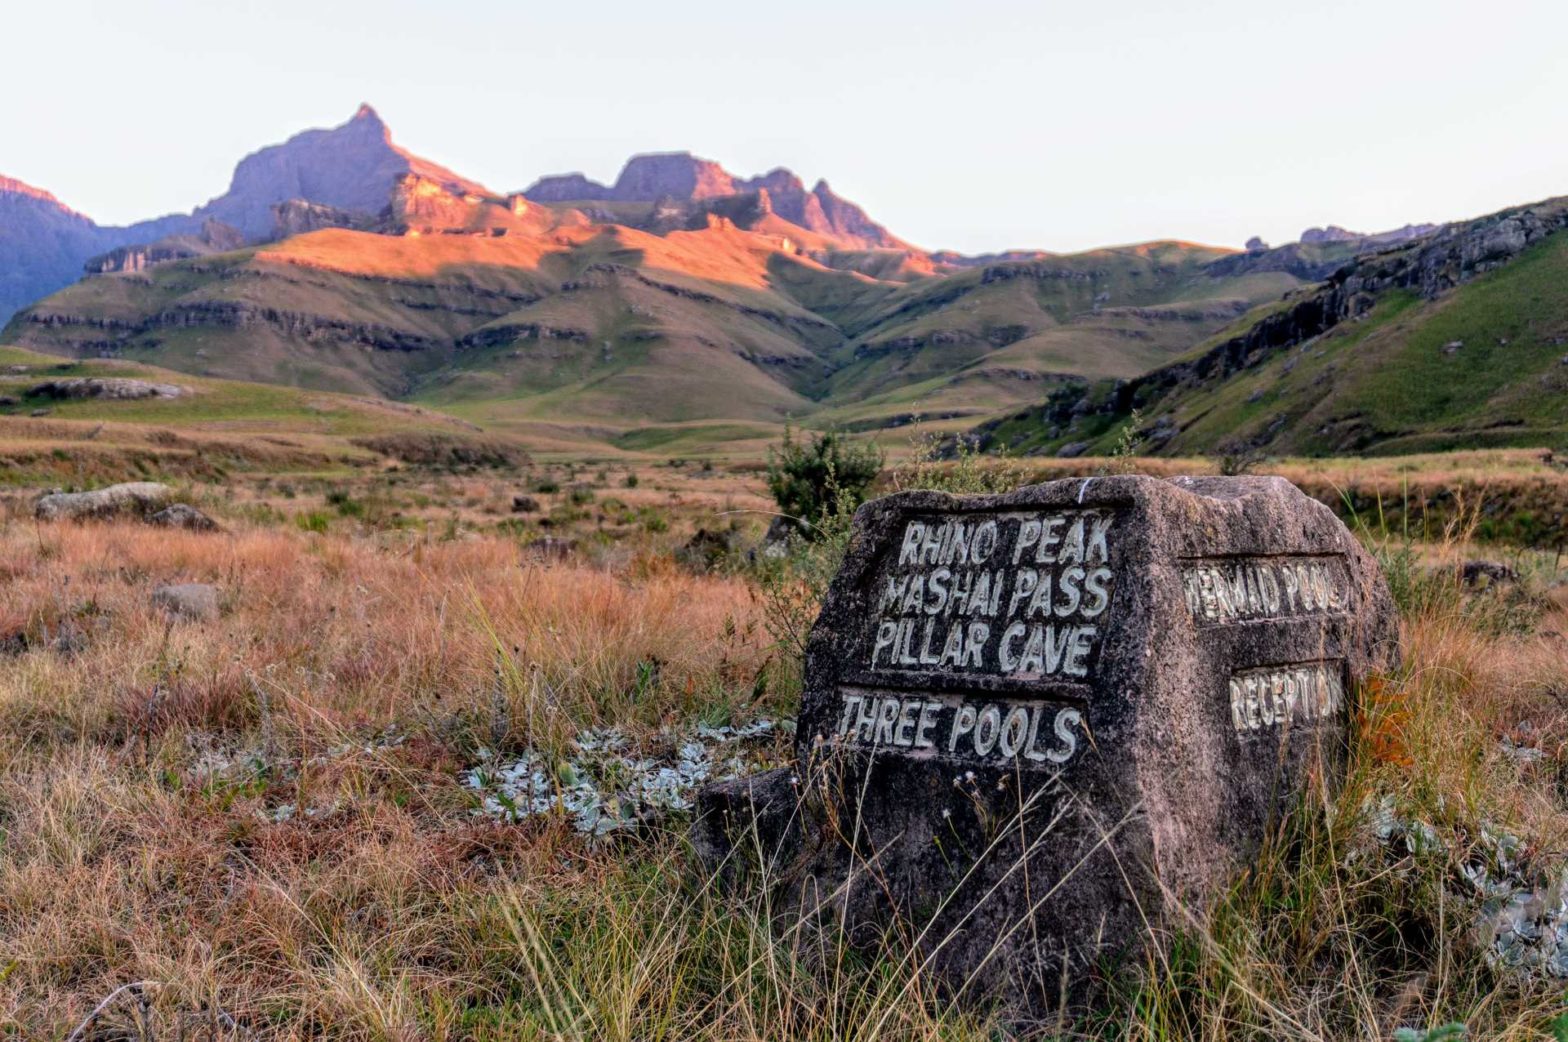 Rhino Peak Trail